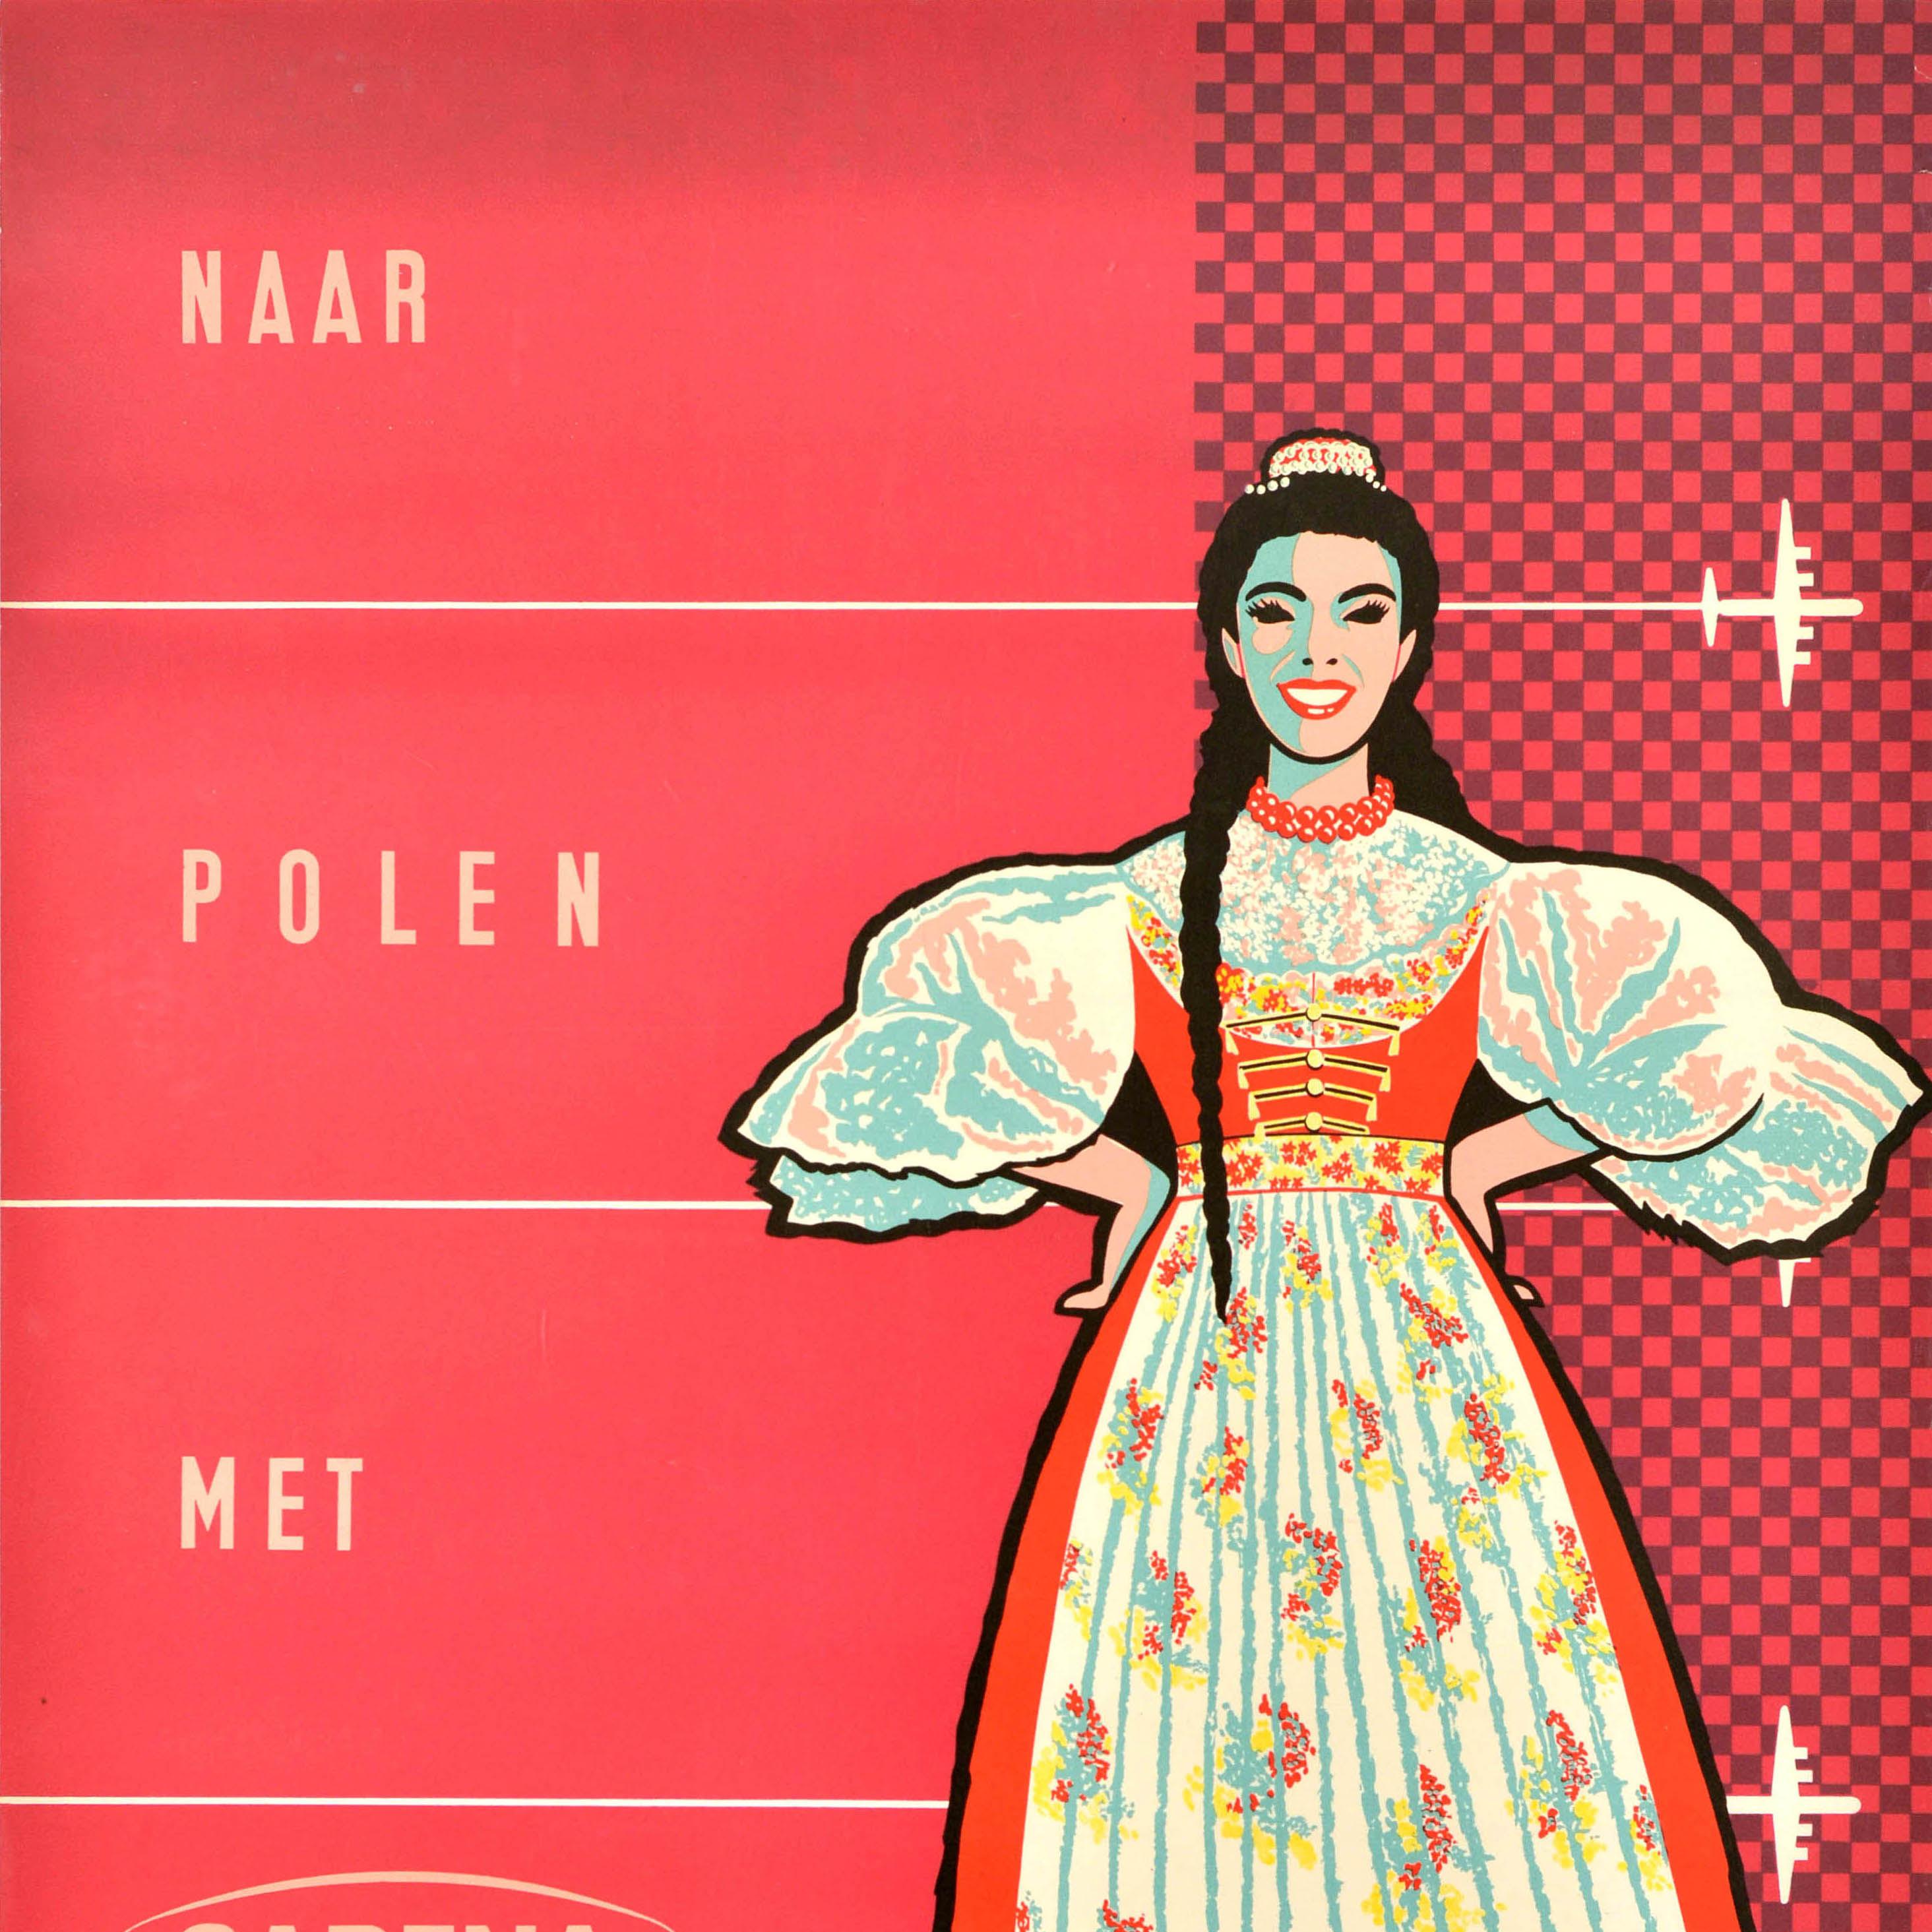 Original-Reisewerbeplakat - Naar Polen met Sabena / To Poland by Sabena (die nationale belgische Fluggesellschaft von 1923-2001), mit einem Design aus der Mitte des Jahrhunderts, das eine lächelnde Dame in einem traditionellen polnischen Kleid vor